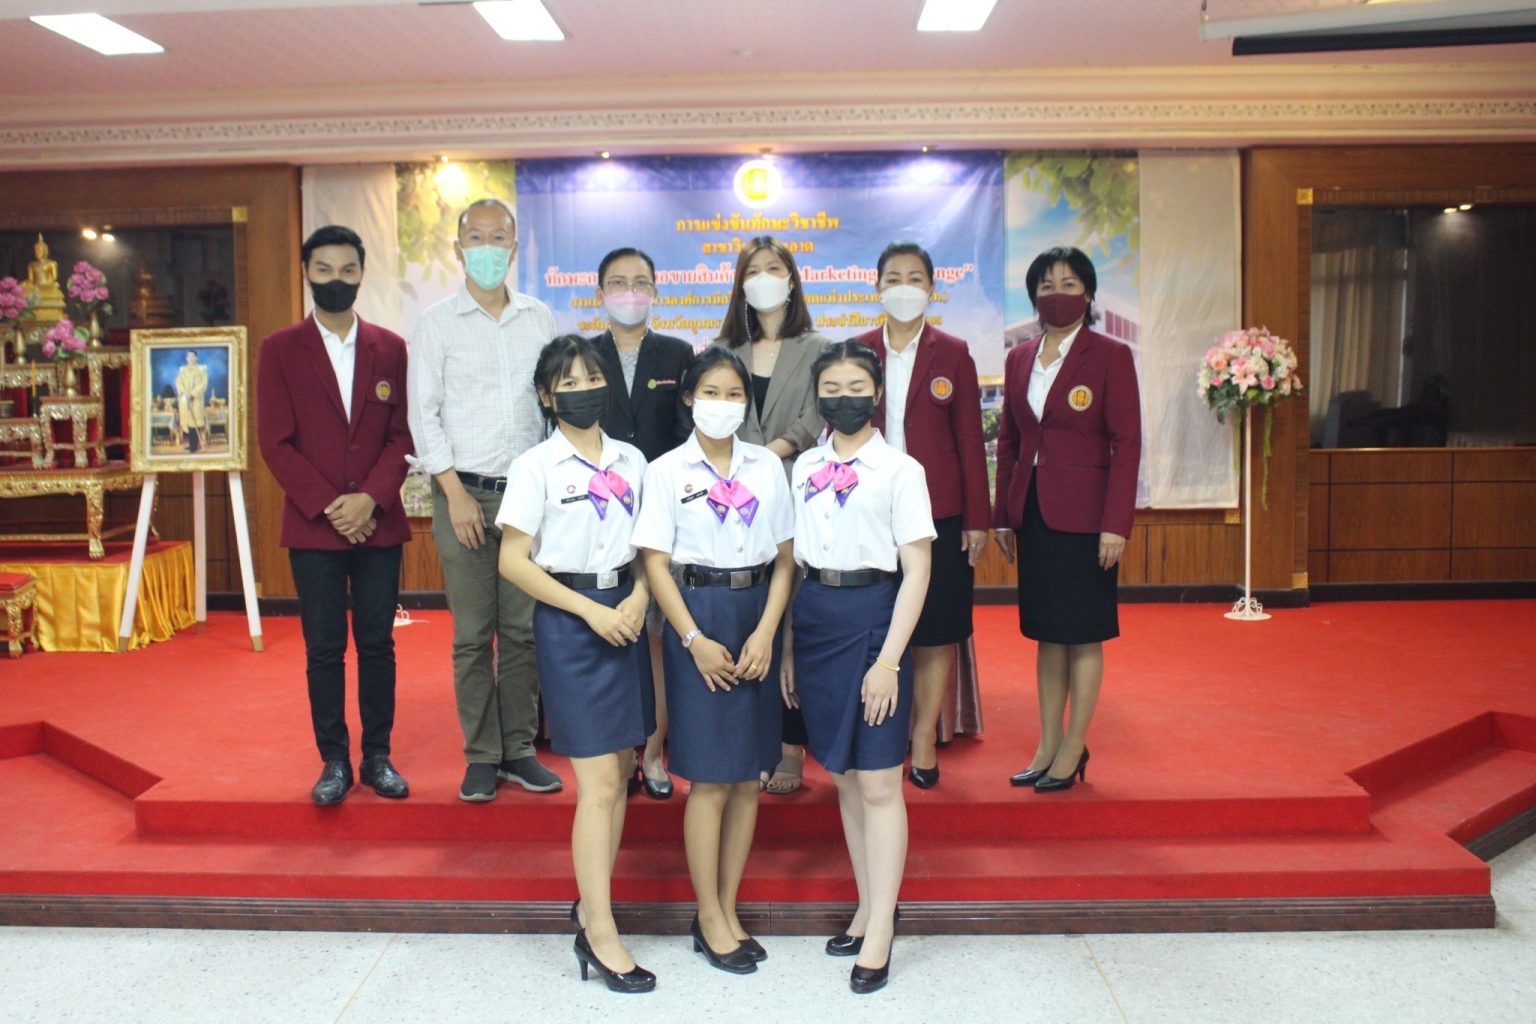 โครงการส่งเสริมคุณธรรม จริยธรรมนักเรียนนักศึกษาโดยการเข้าร่วมการประชุมวิชาการองค์การนักวิชาชีพในอนาคตแห่งประเทศไทย (อวท.) ระดับจังหวัดอุบลราชธานี  ประจำปีการศึกษา 2565